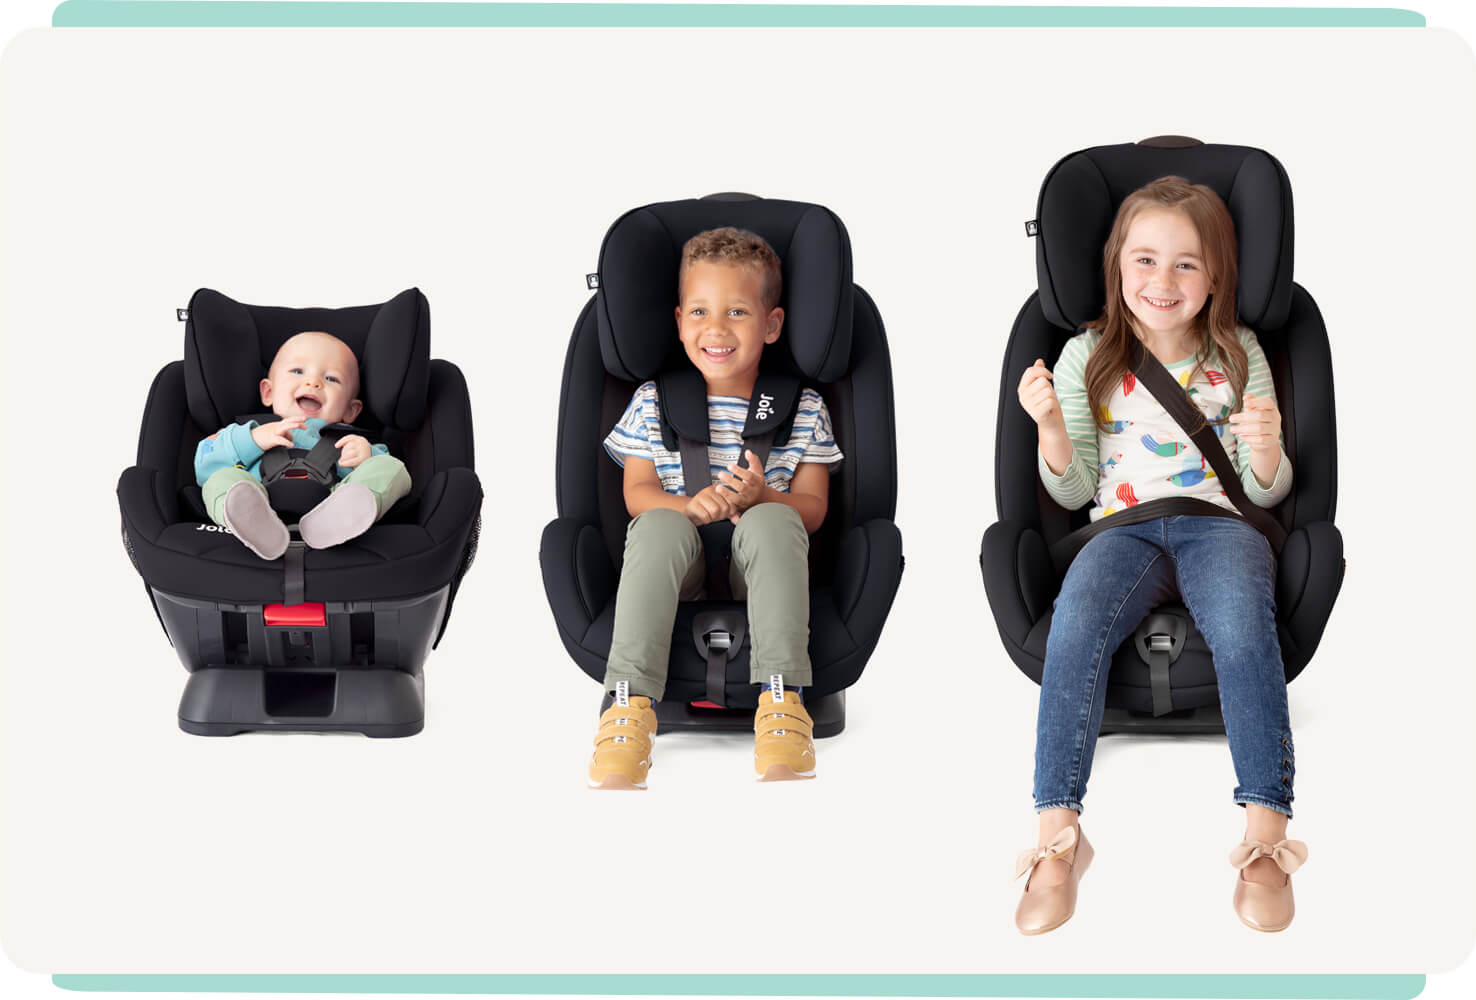  Trois sièges auto Joie, coloris noir, avec trois enfants d’âge croissant. 